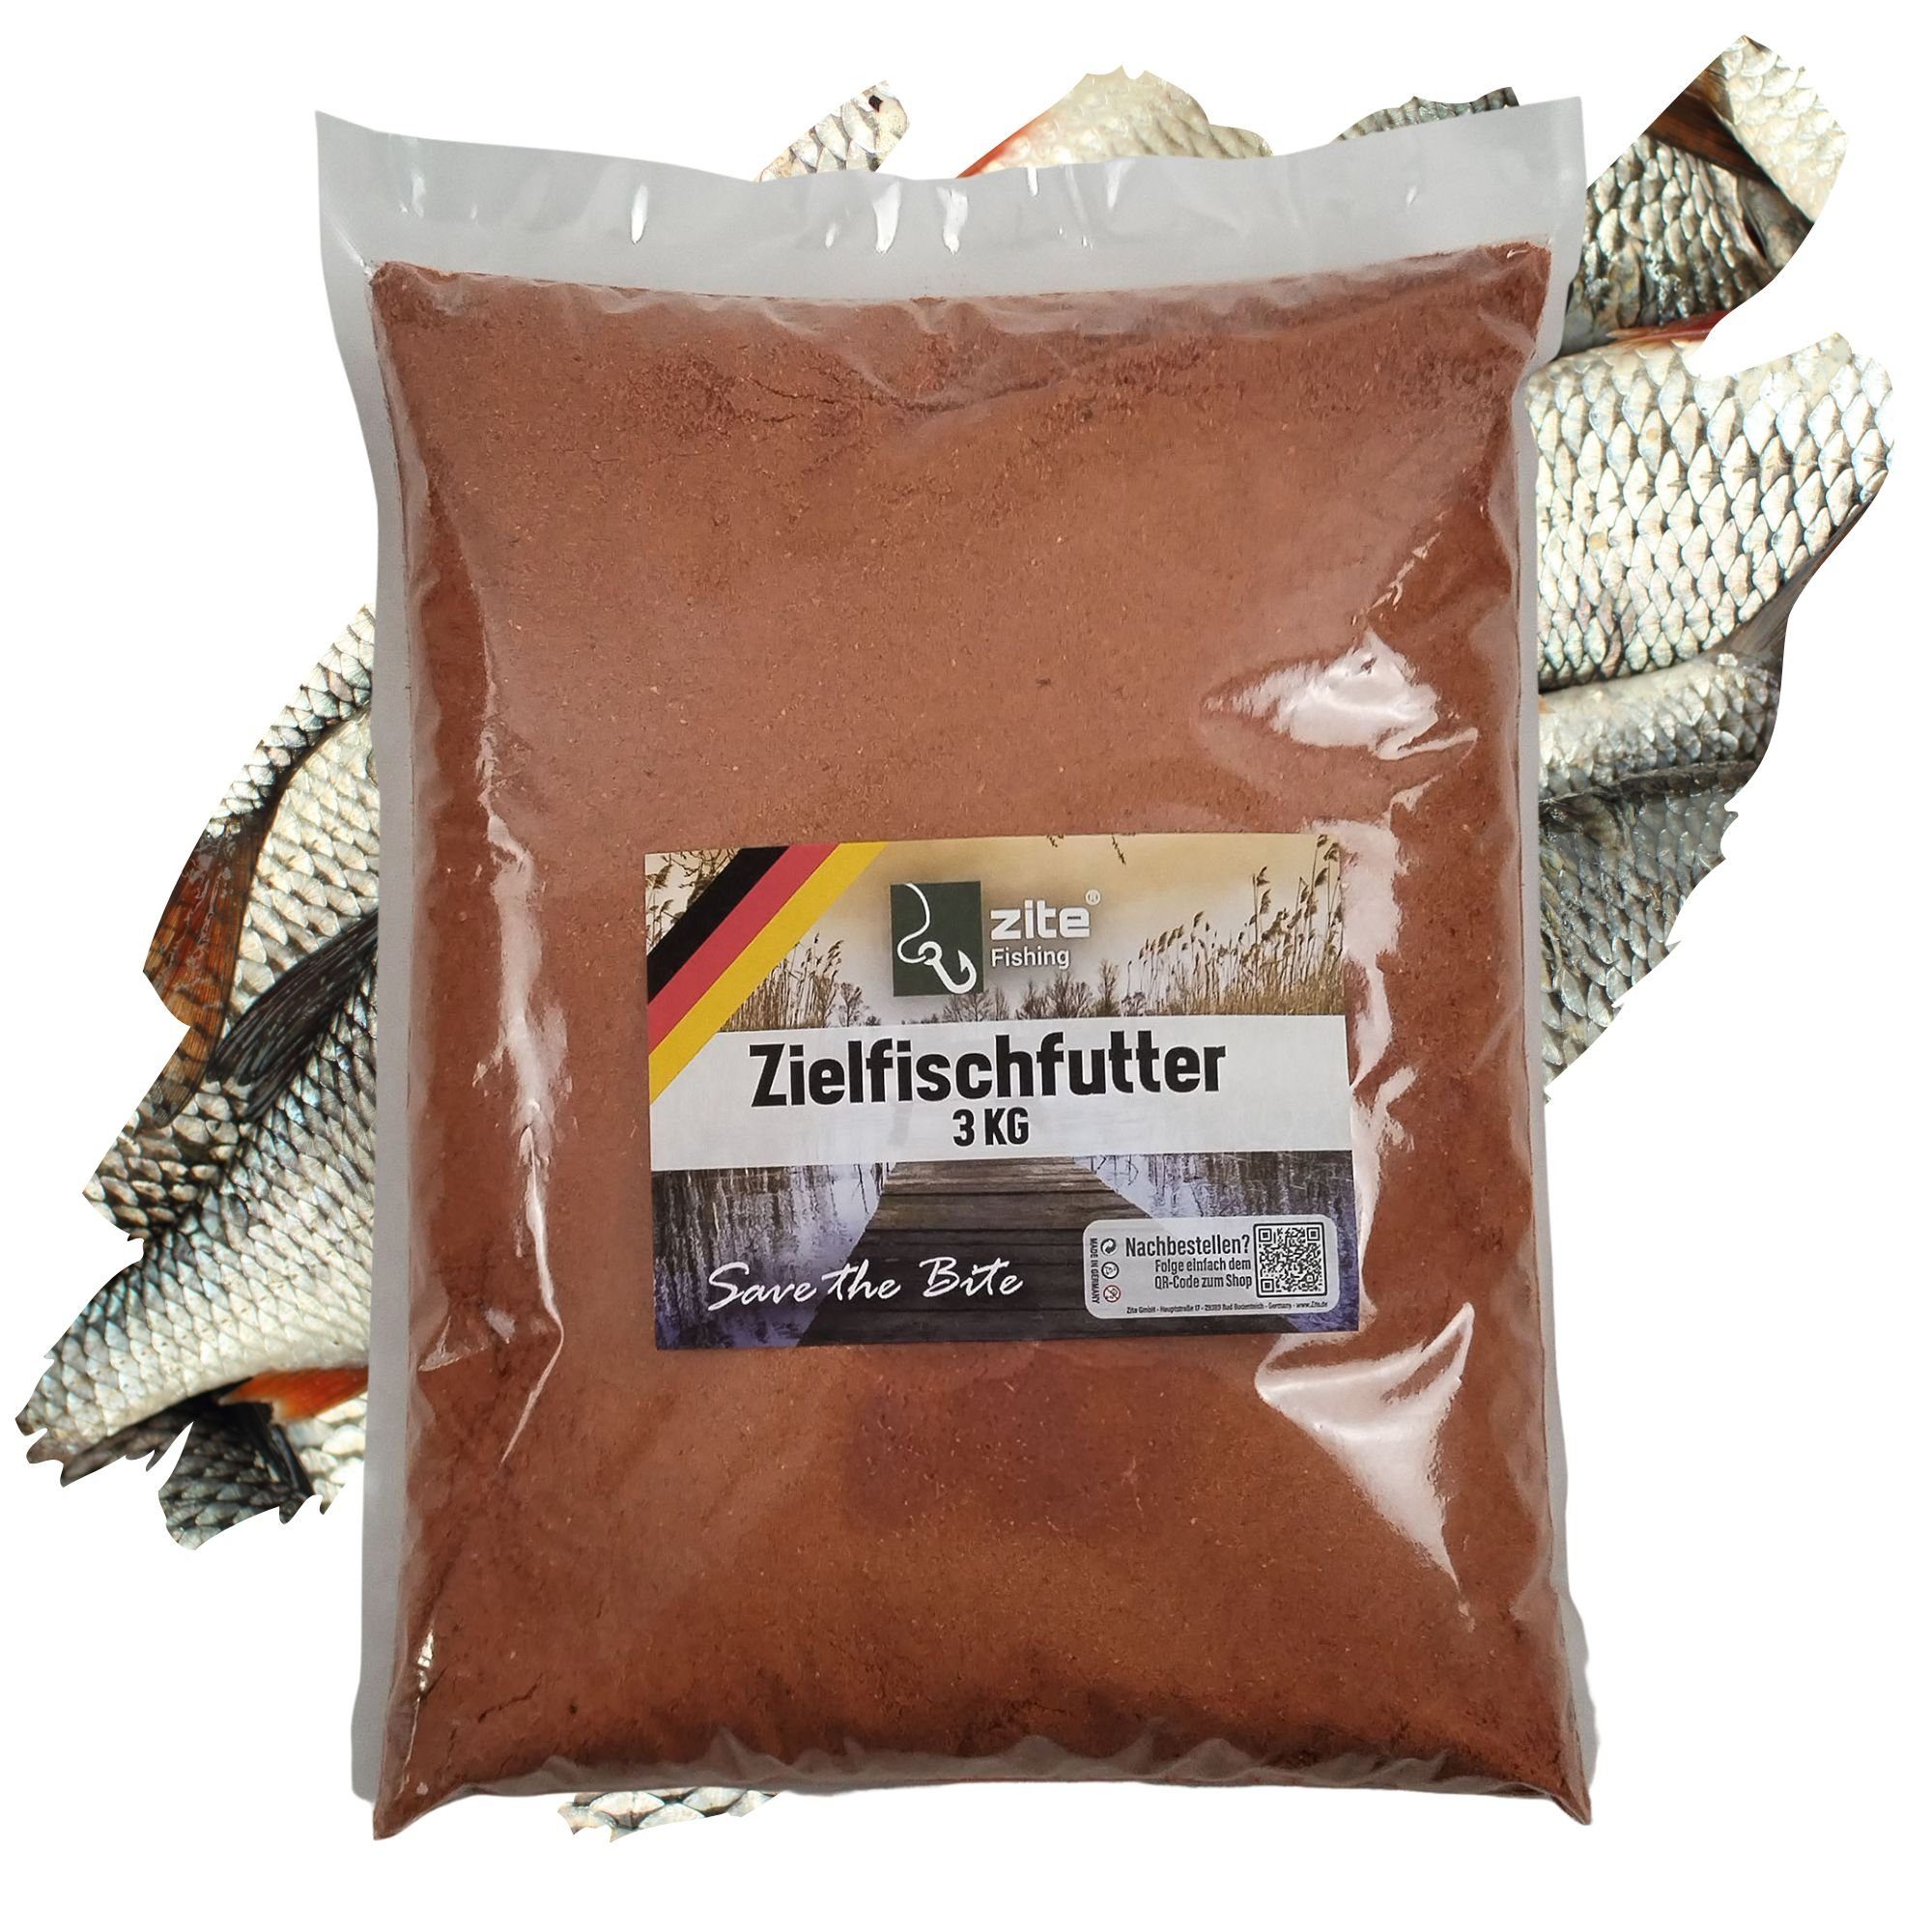 Zite Zielfischfutter Fertigmixe Angeln - 3 Rotauge Fischlockstoff Grundfutter Hochattraktives kg